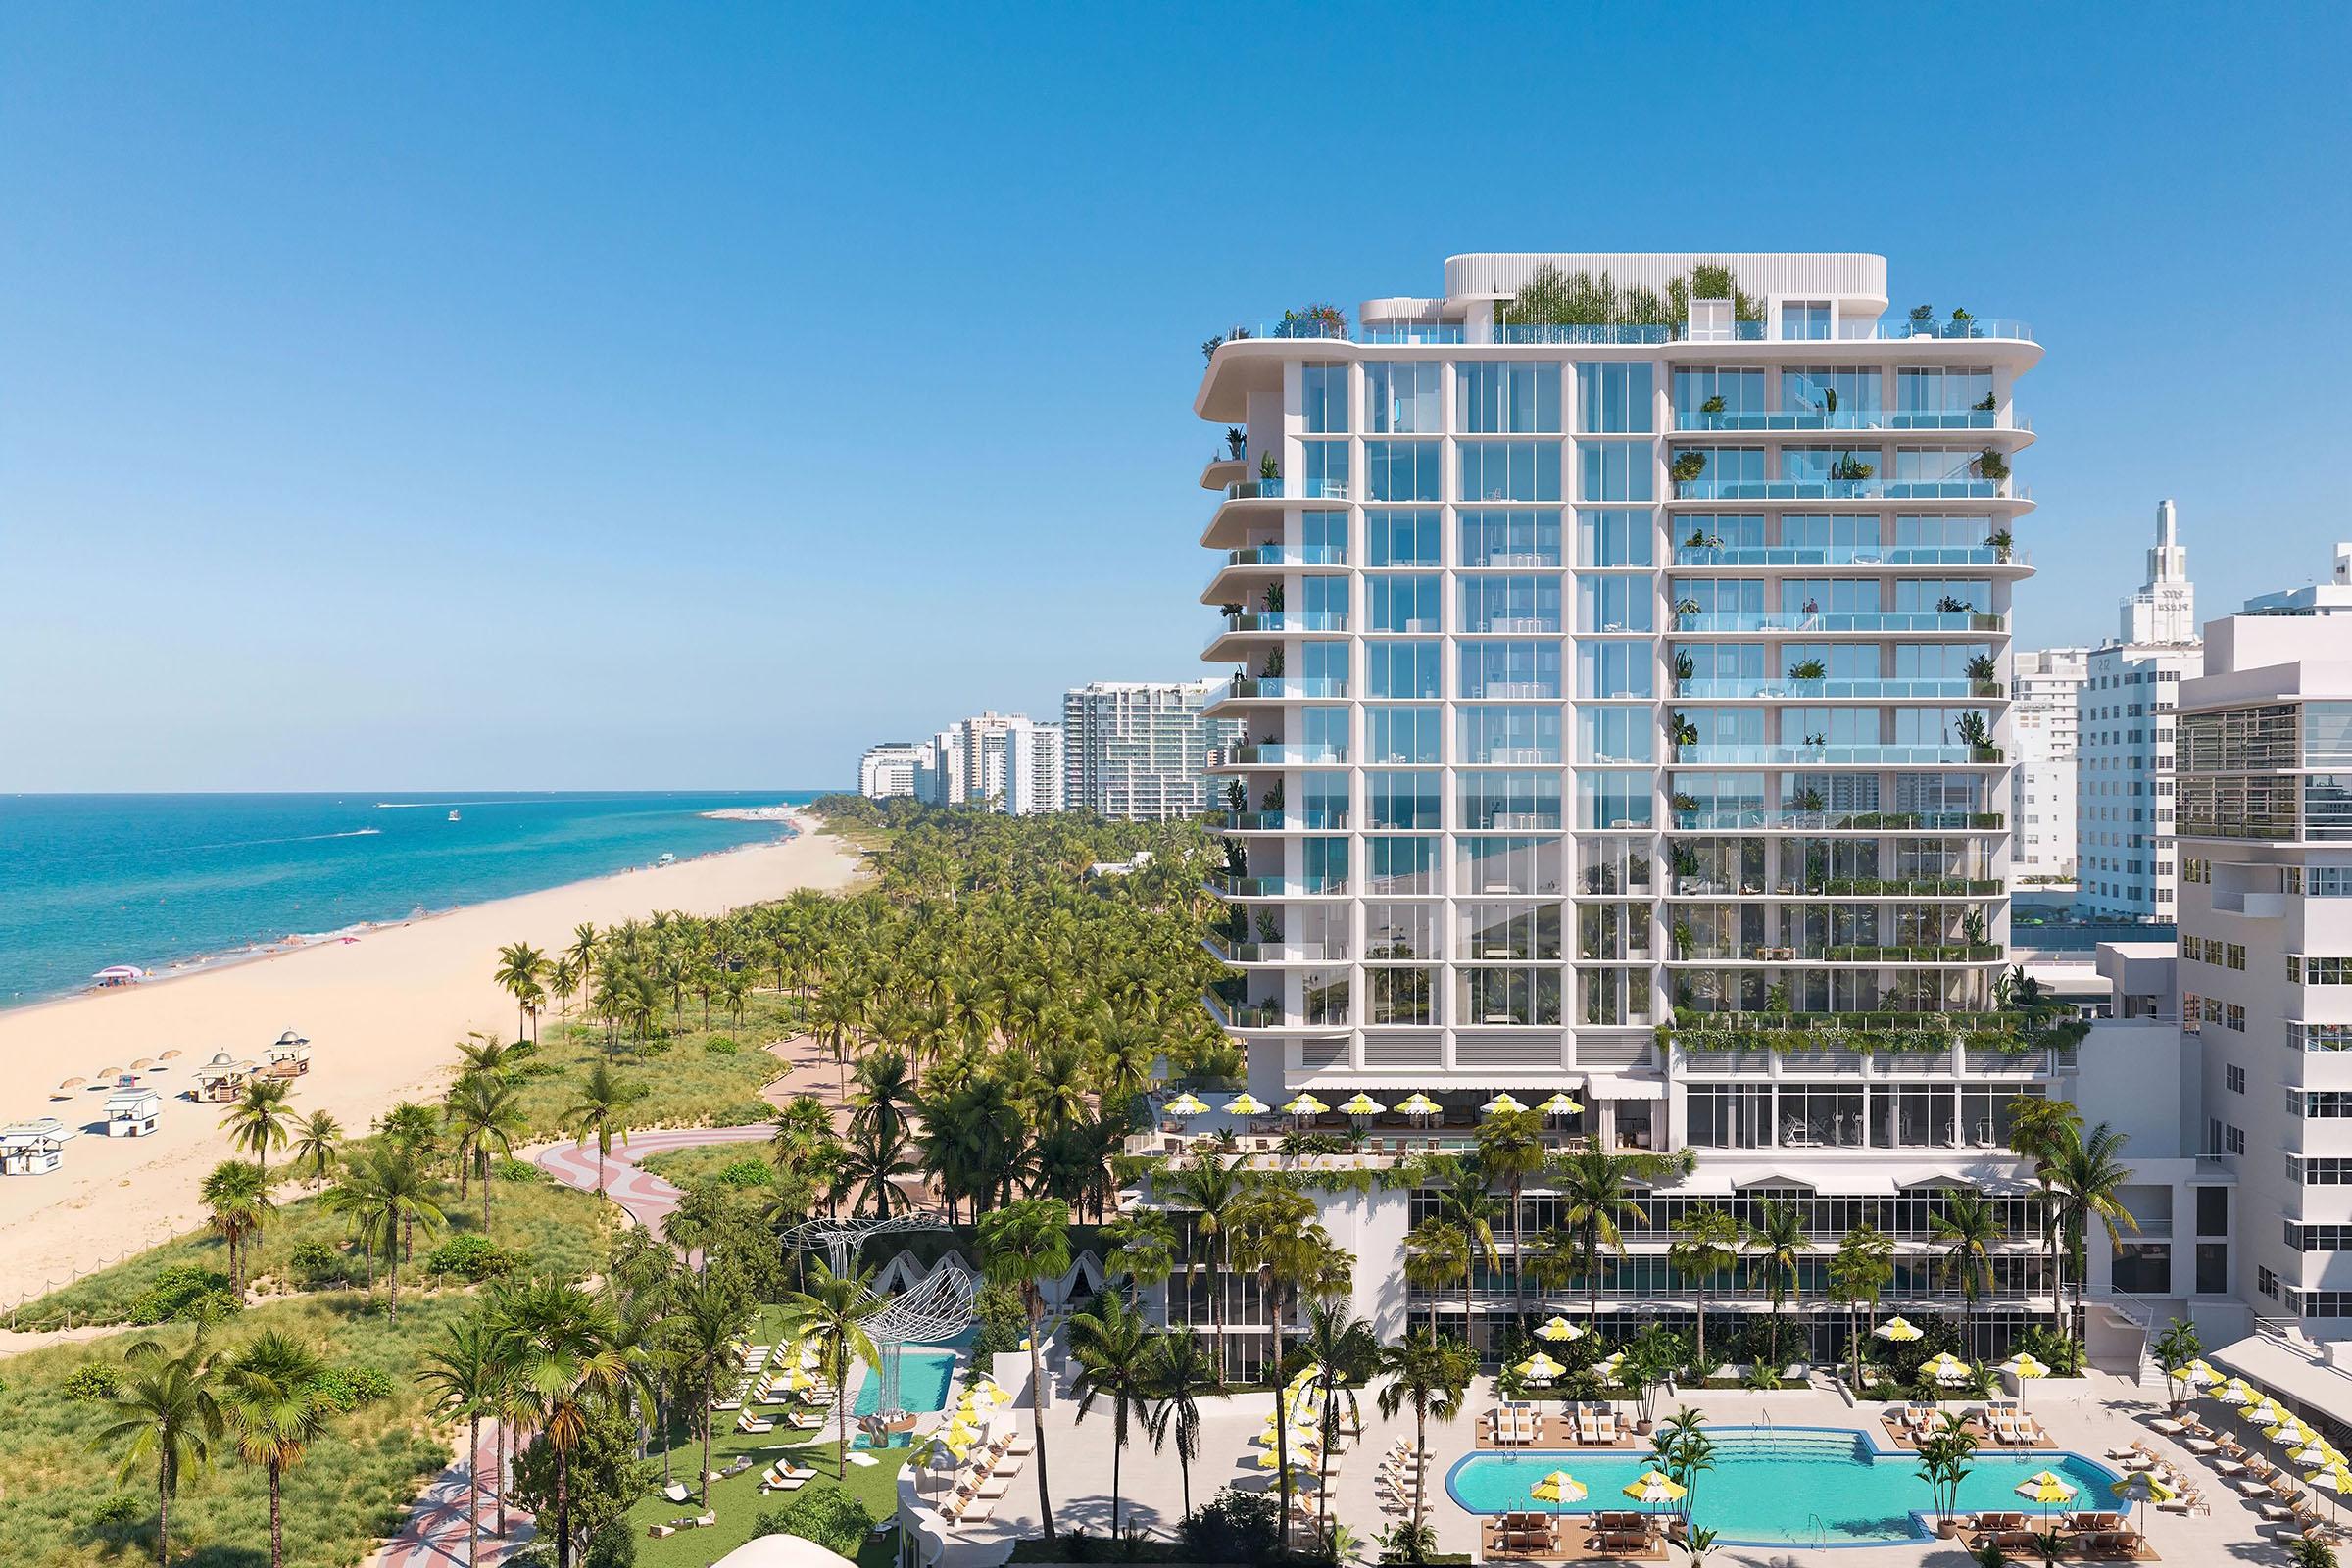 Ritz Carlton/Sagamore Miami Beach